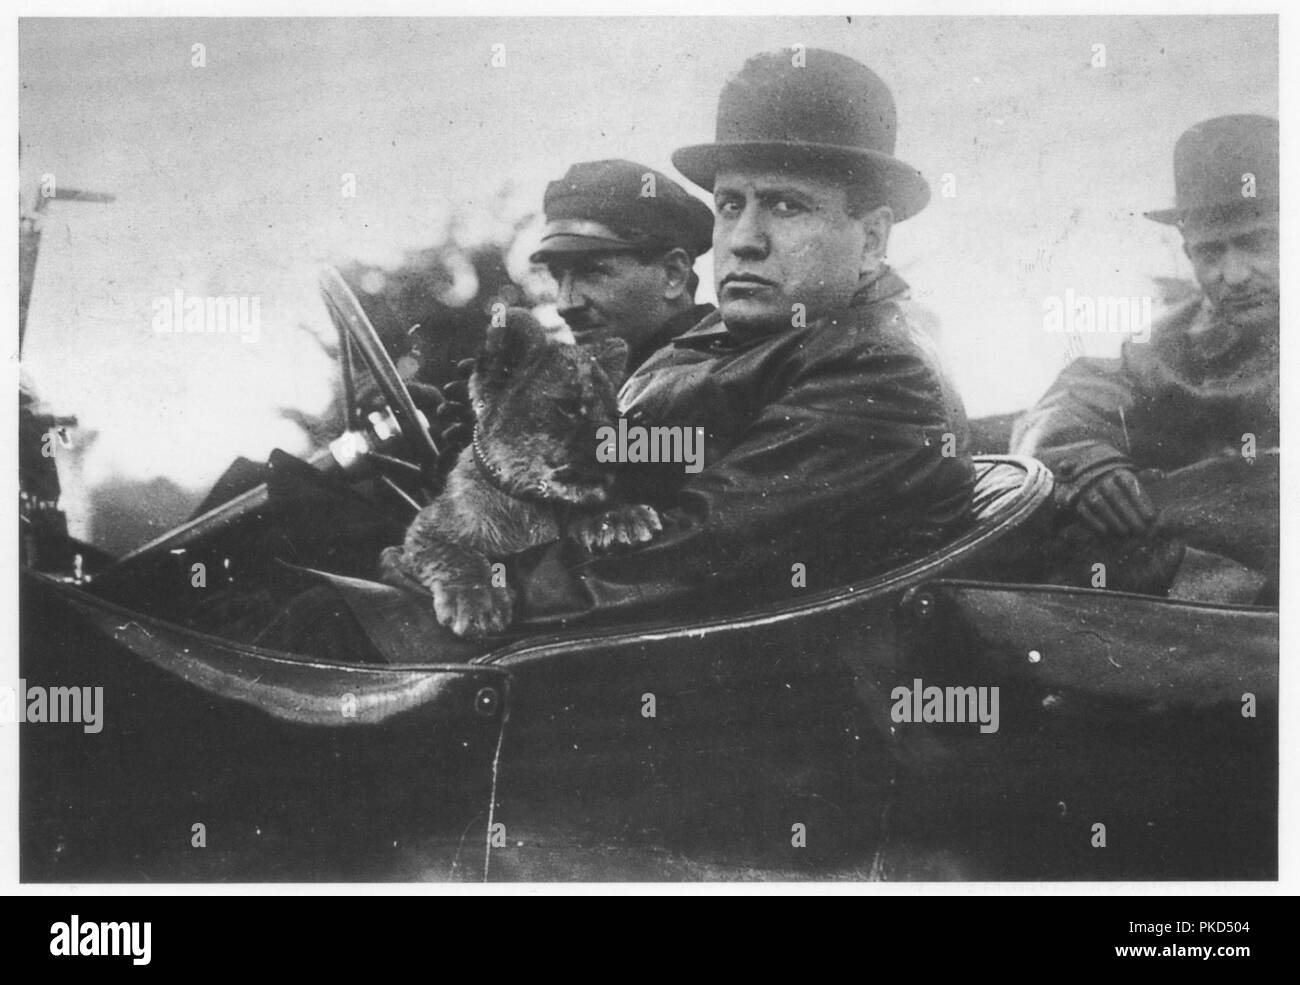 Benito Mussolini die Italienische faschistische Führer in einem oben offenen Auto mit seinem Haustier lion Cub "Ras" im Jahre 1924, nachdem er Diktator Italiens Stockfoto